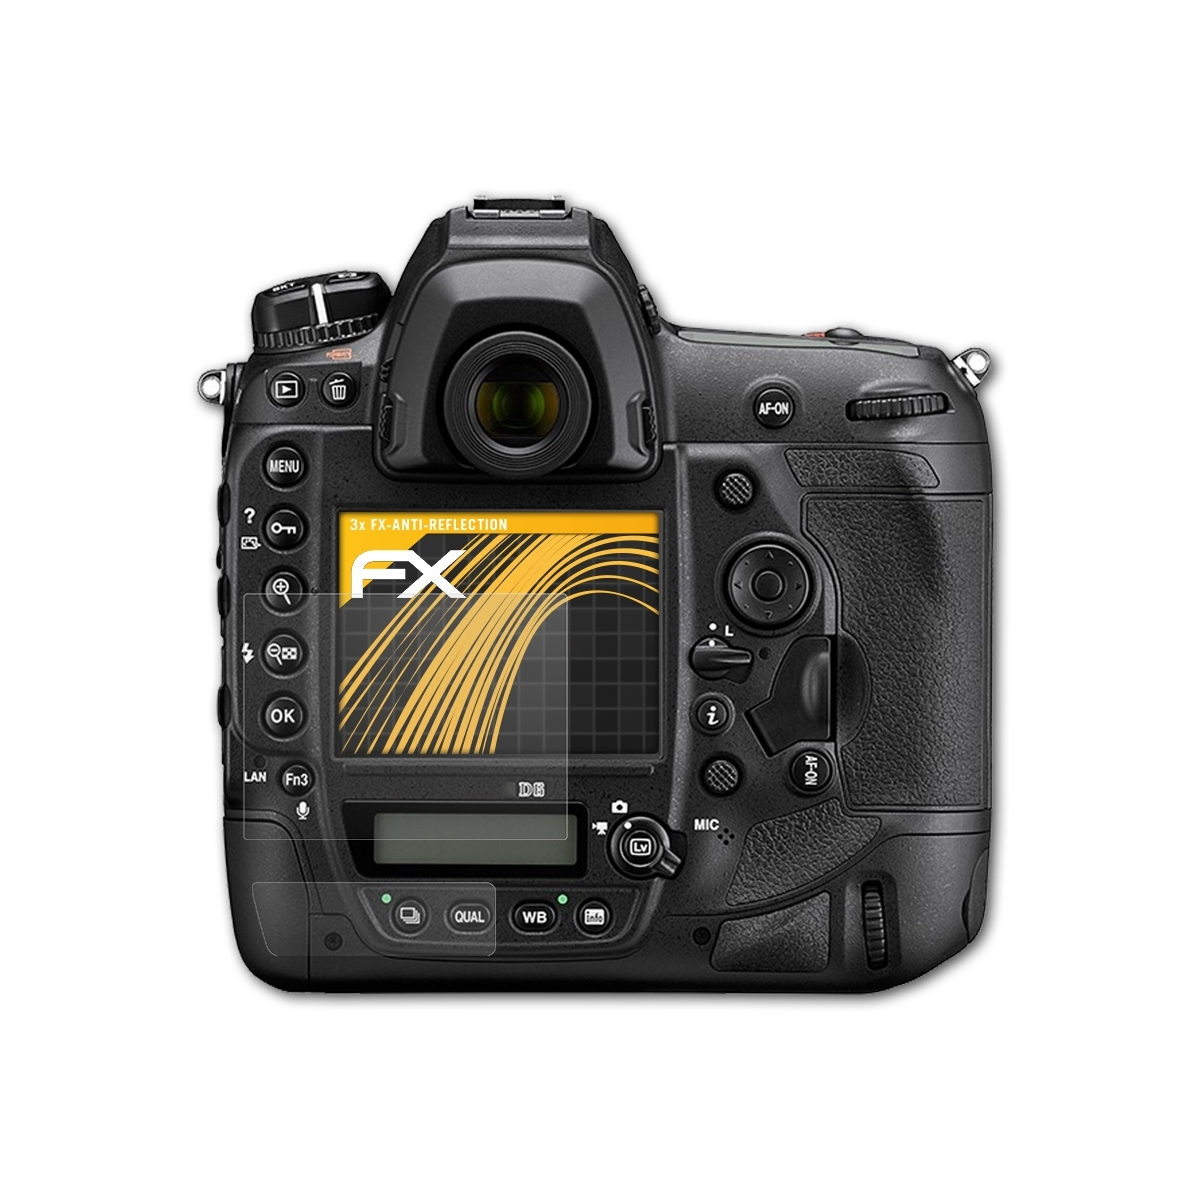 D6) Displayschutz(für FX-Antireflex ATFOLIX Nikon 3x